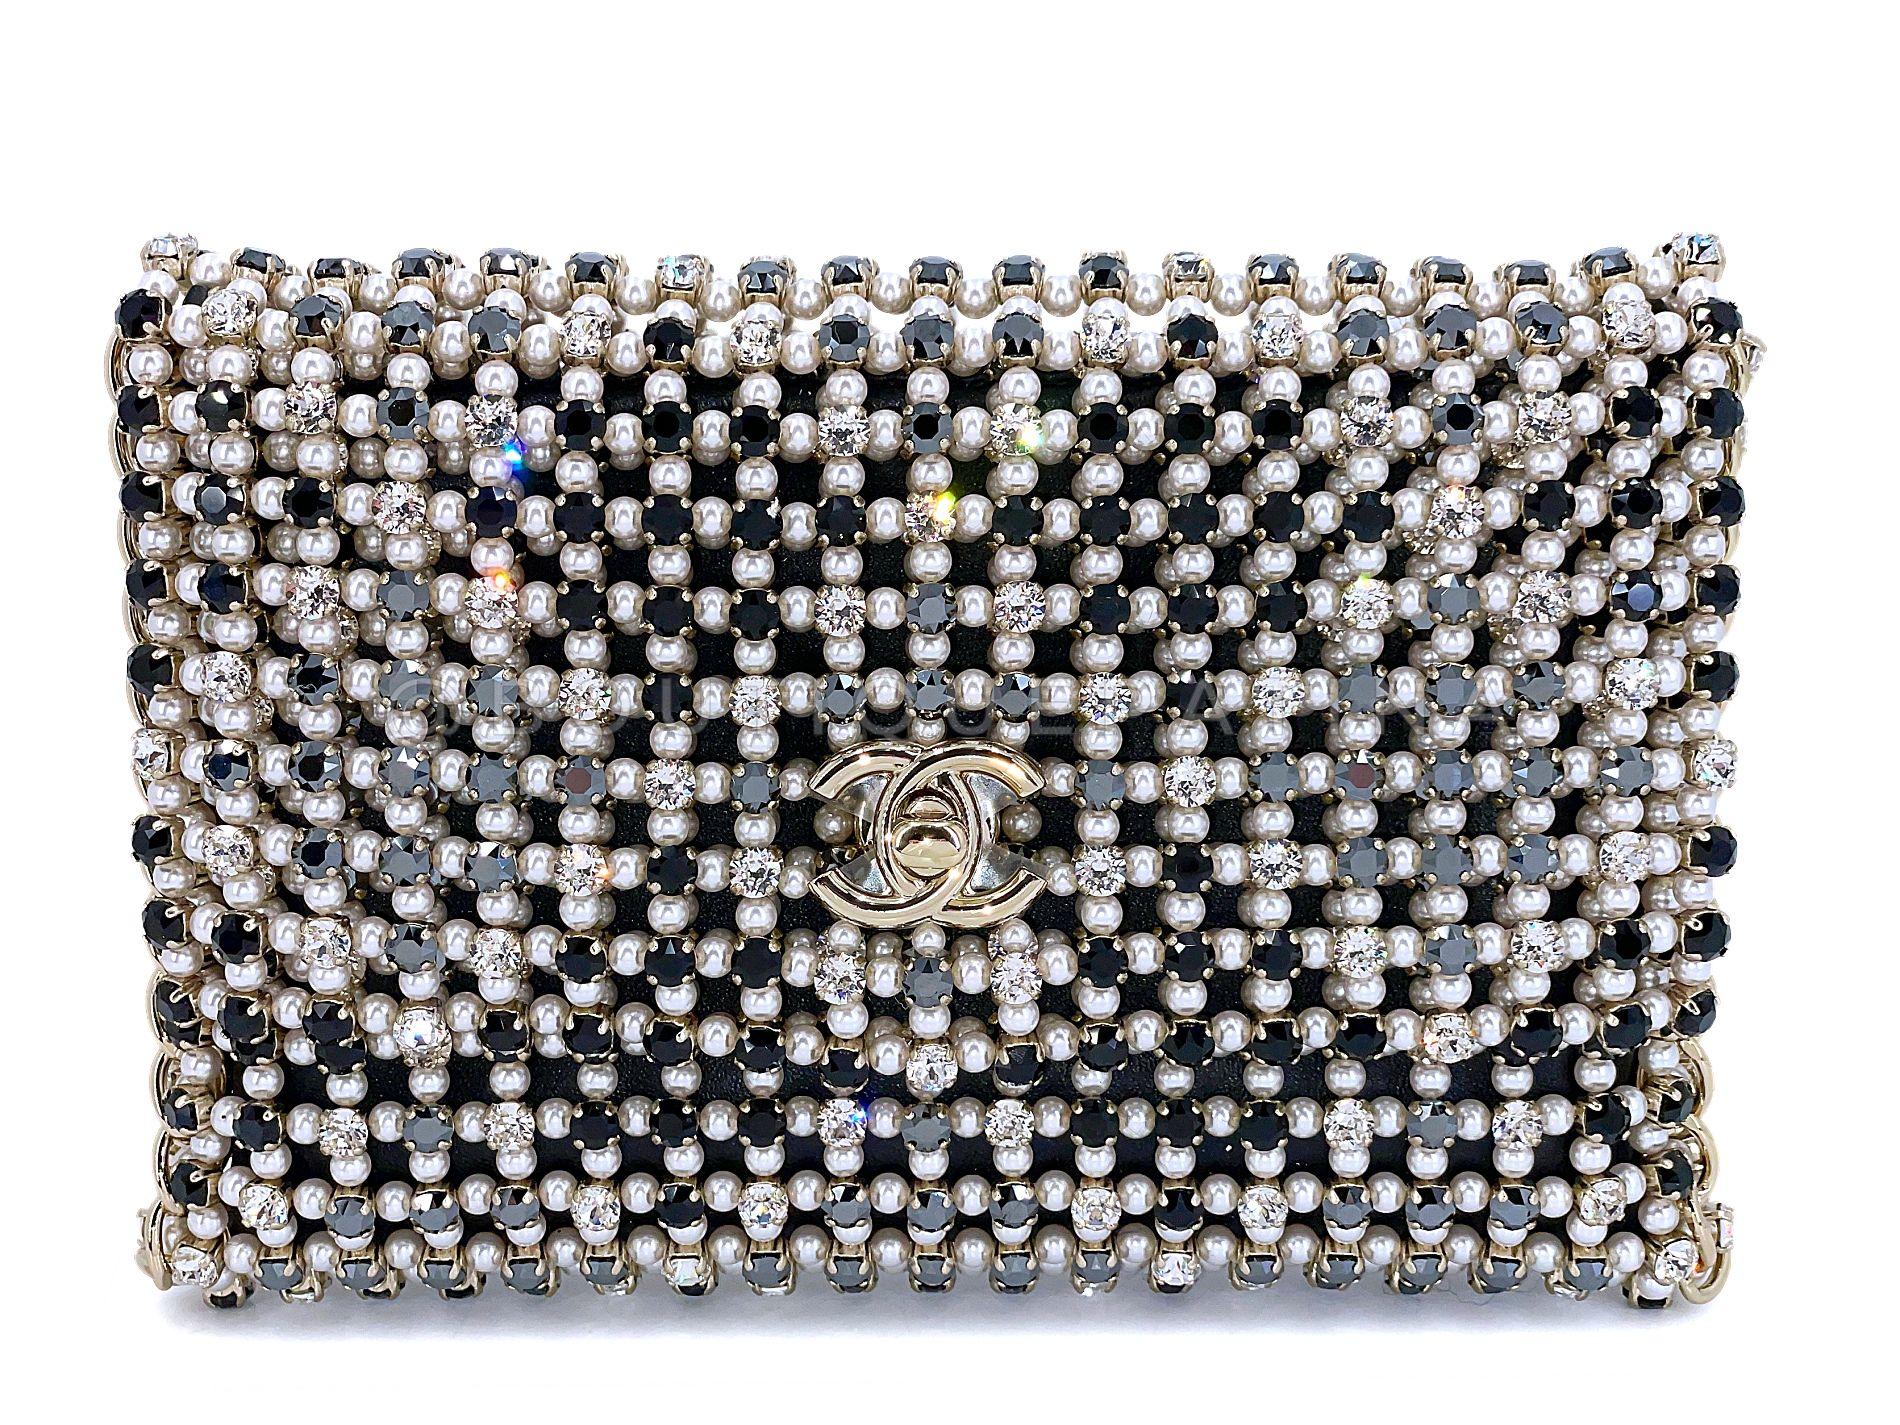 Artikel speichern: 67895
Eine der begehrtesten Taschen der letzten Kollektionen von Virginie ist diese Chanel 2021 Evening Gold Pearls Crystal Flap Bag aus der Herbst-Winter-Kollektion 2021. 

Das Äußere besteht aus Kunstperlen, großen